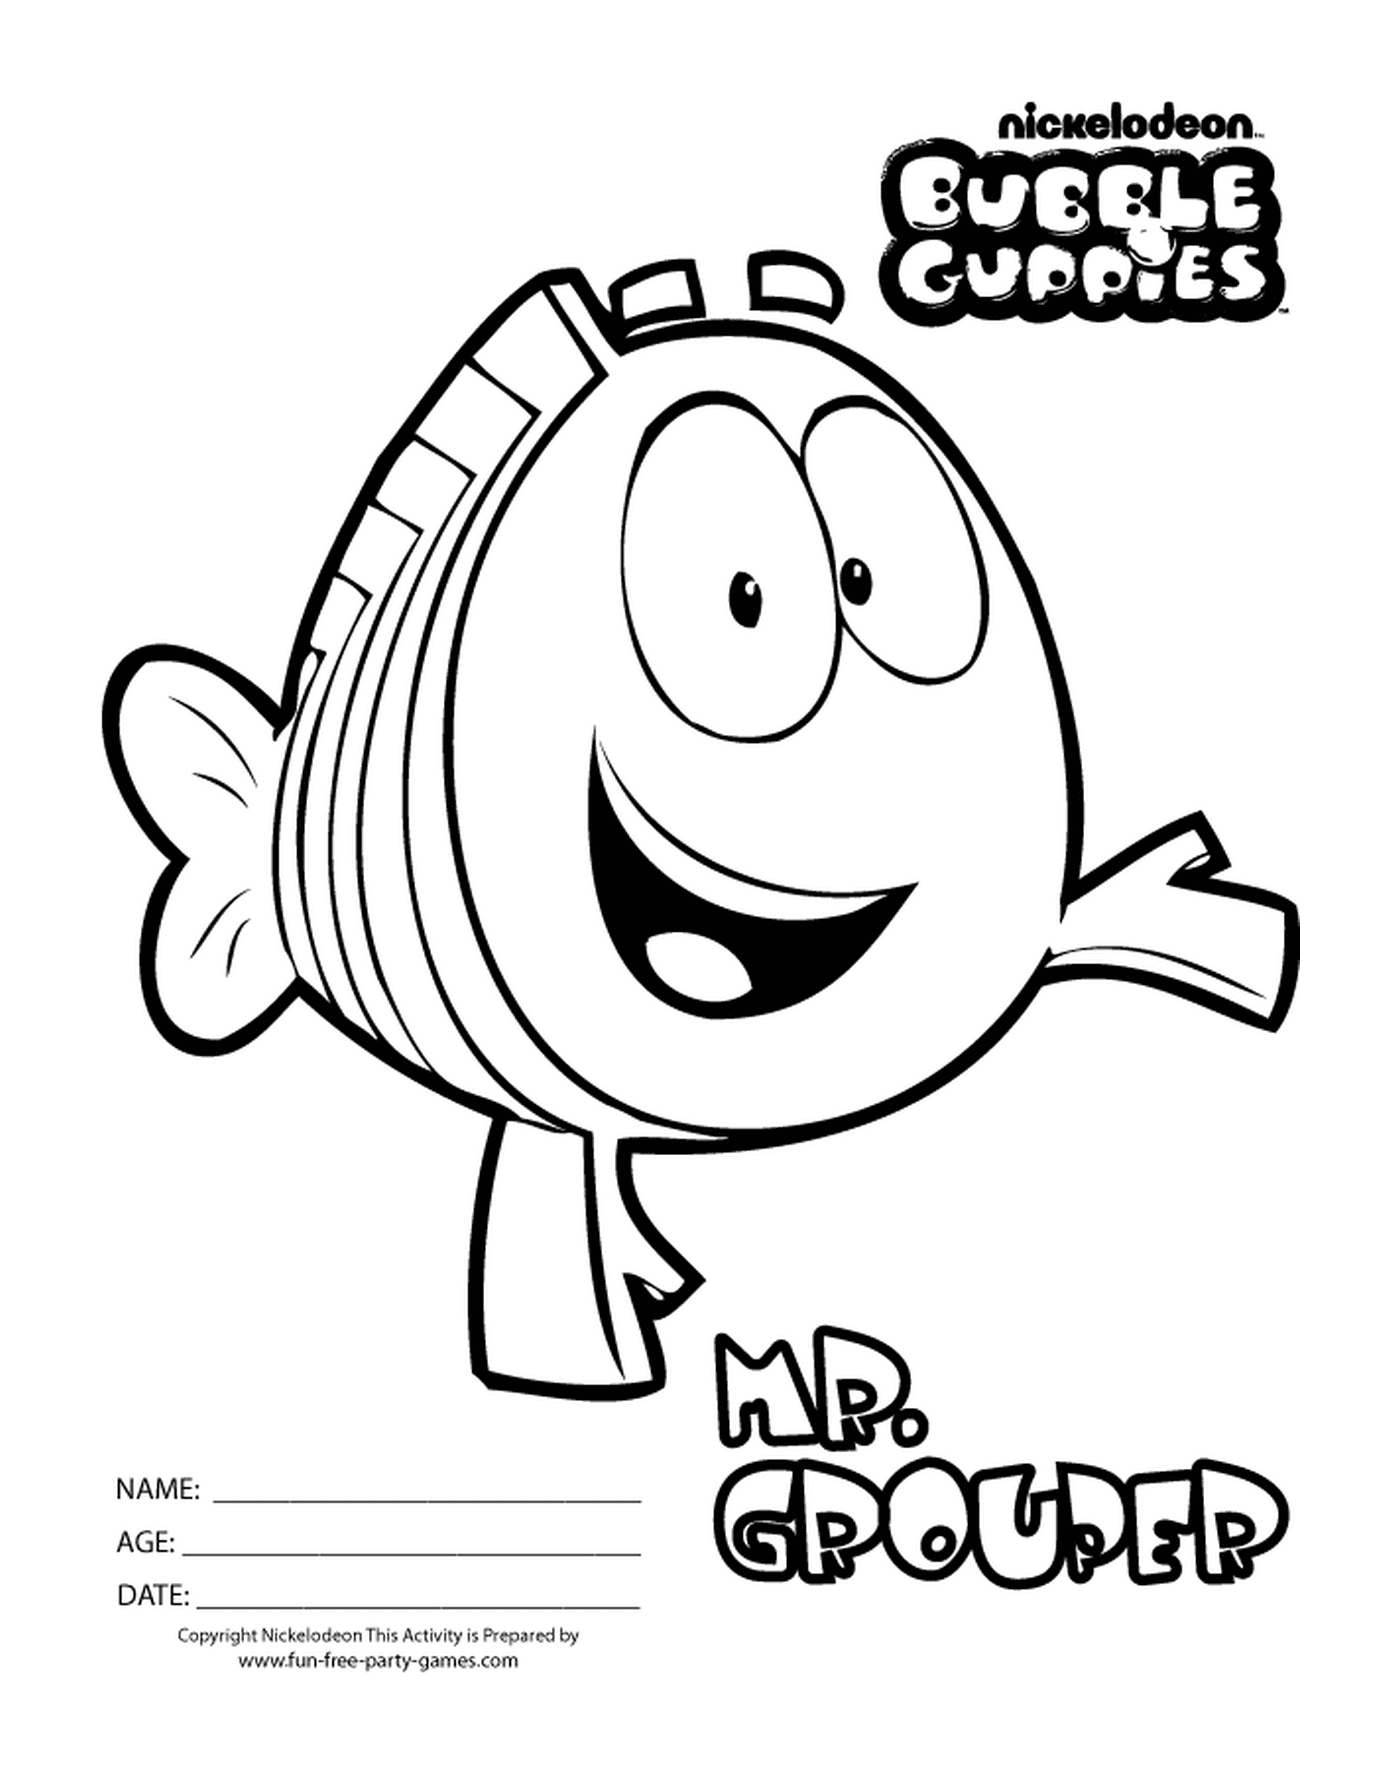  Grouper des Bubble Guppies, um peixe animado 